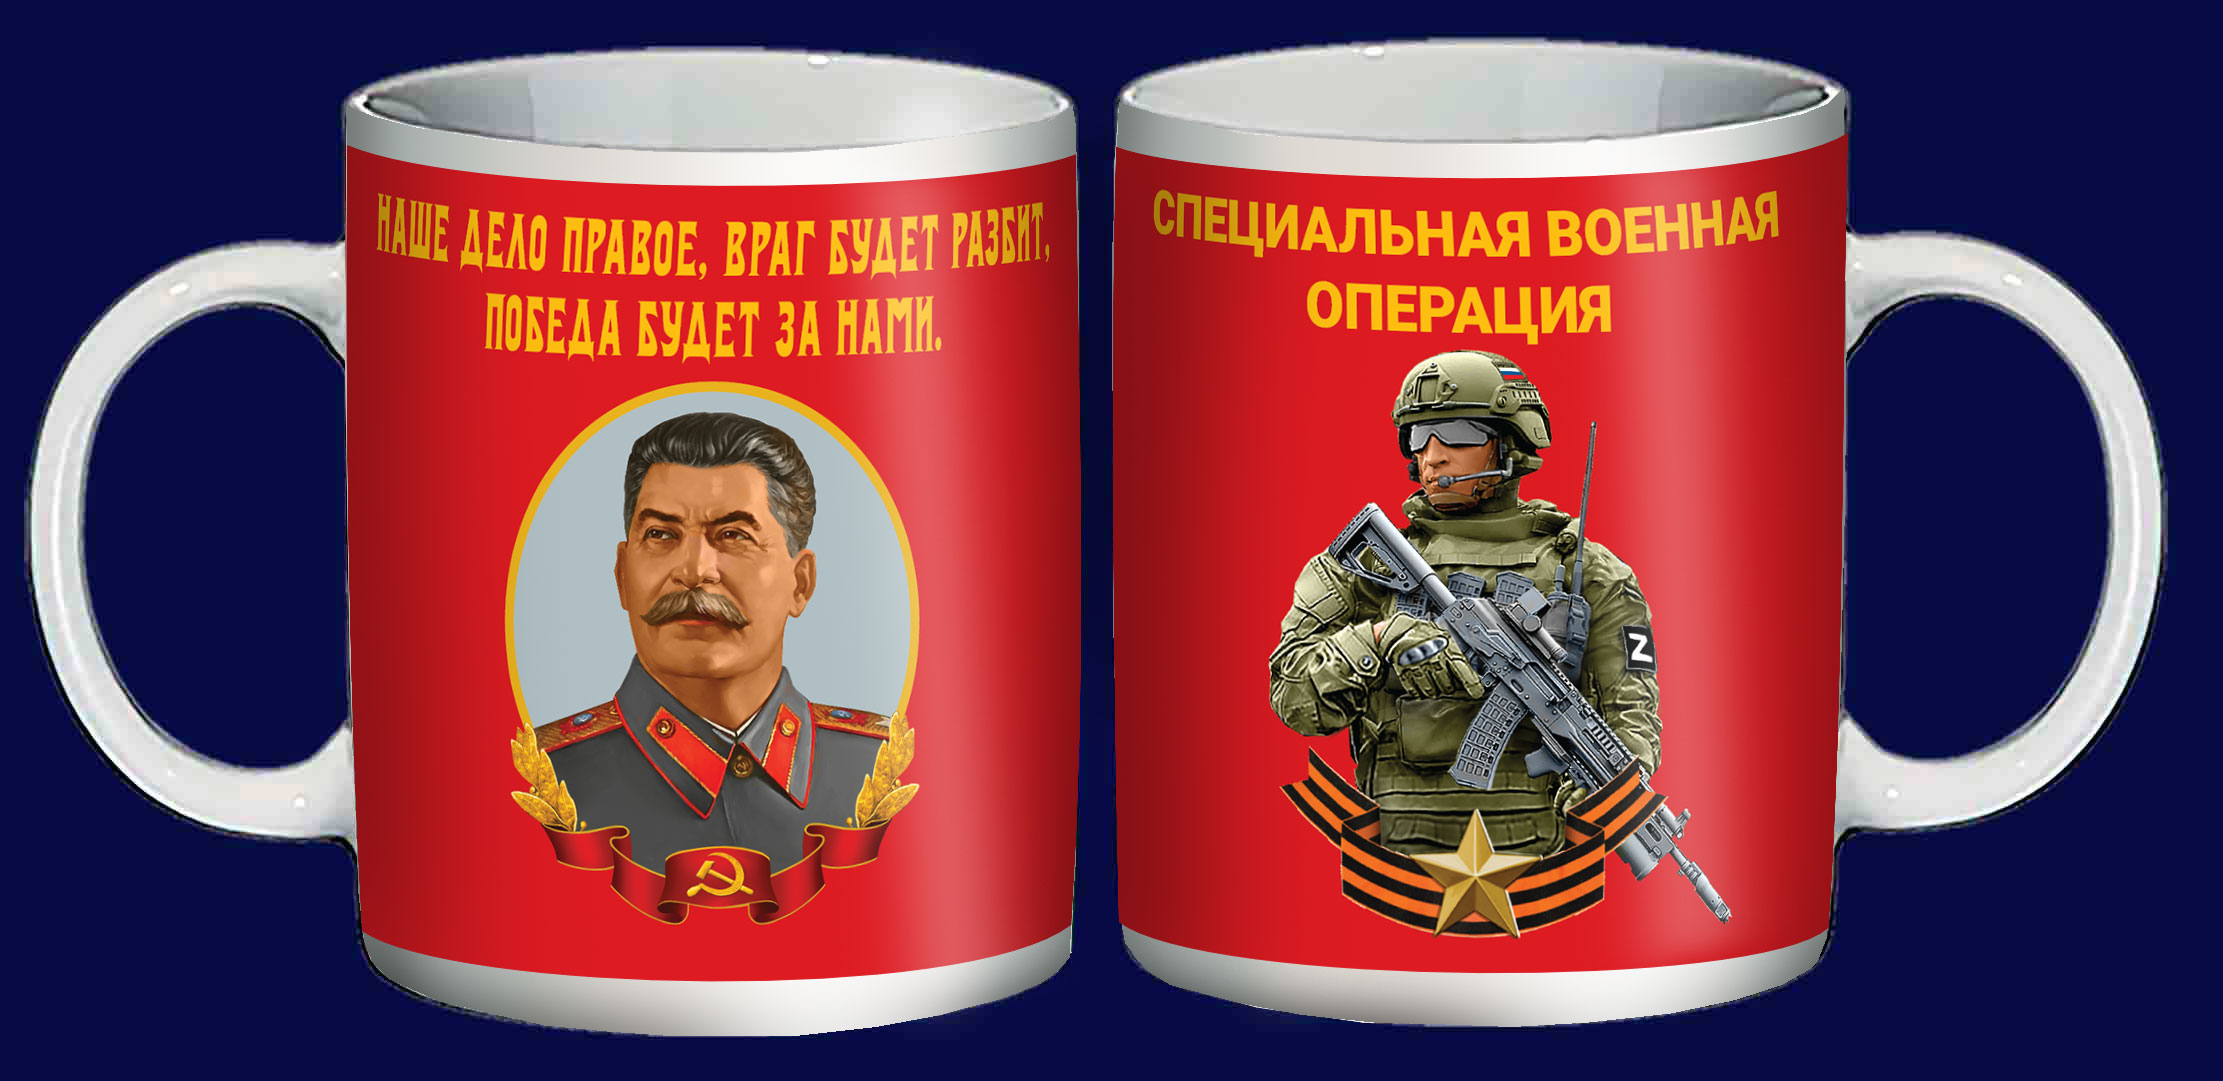 Керамическая кружка со Сталиным "Наше дело правое"